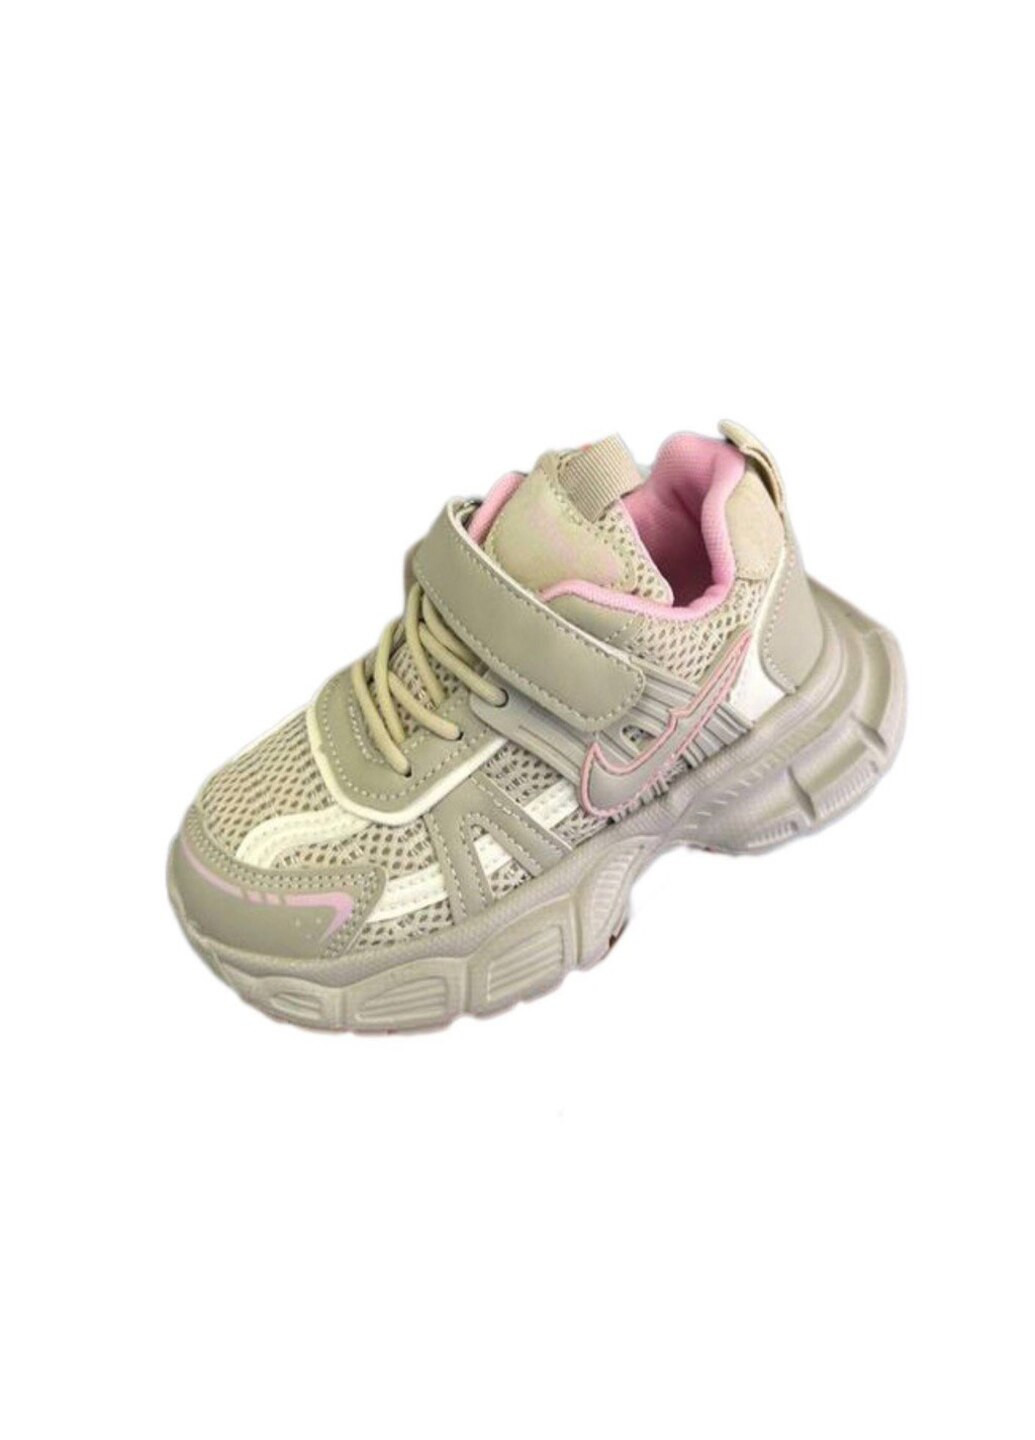 Бежевые демисезонные кроссовки для девочки clibee f8 31 19,5 см розовый кв0478-0 Bessky